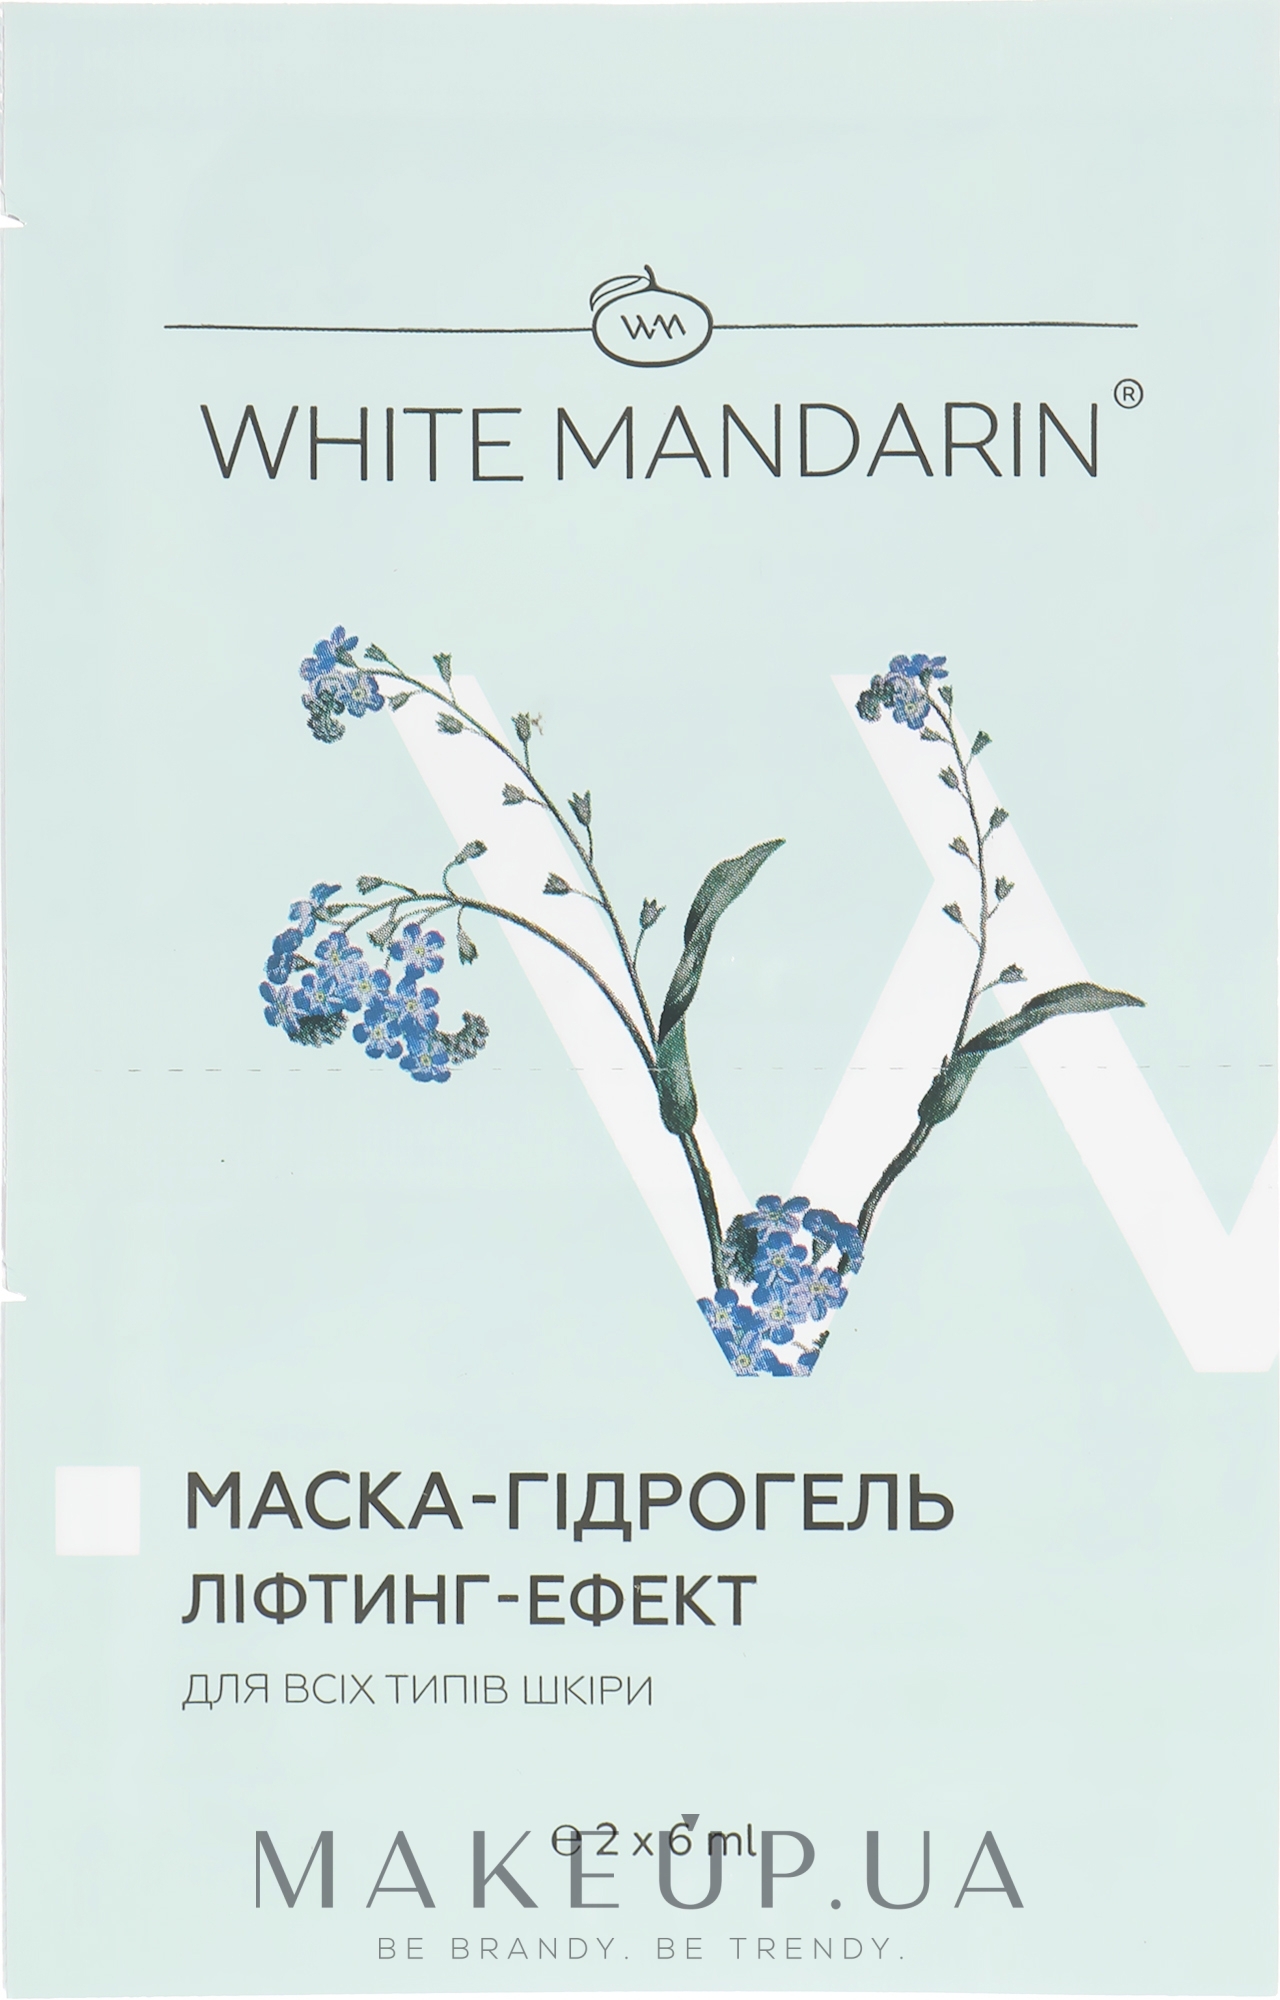 Маска-гидрогель «Лифтинг эффект» серии «Морские водоросли» - White Mandarin — фото 2x6ml